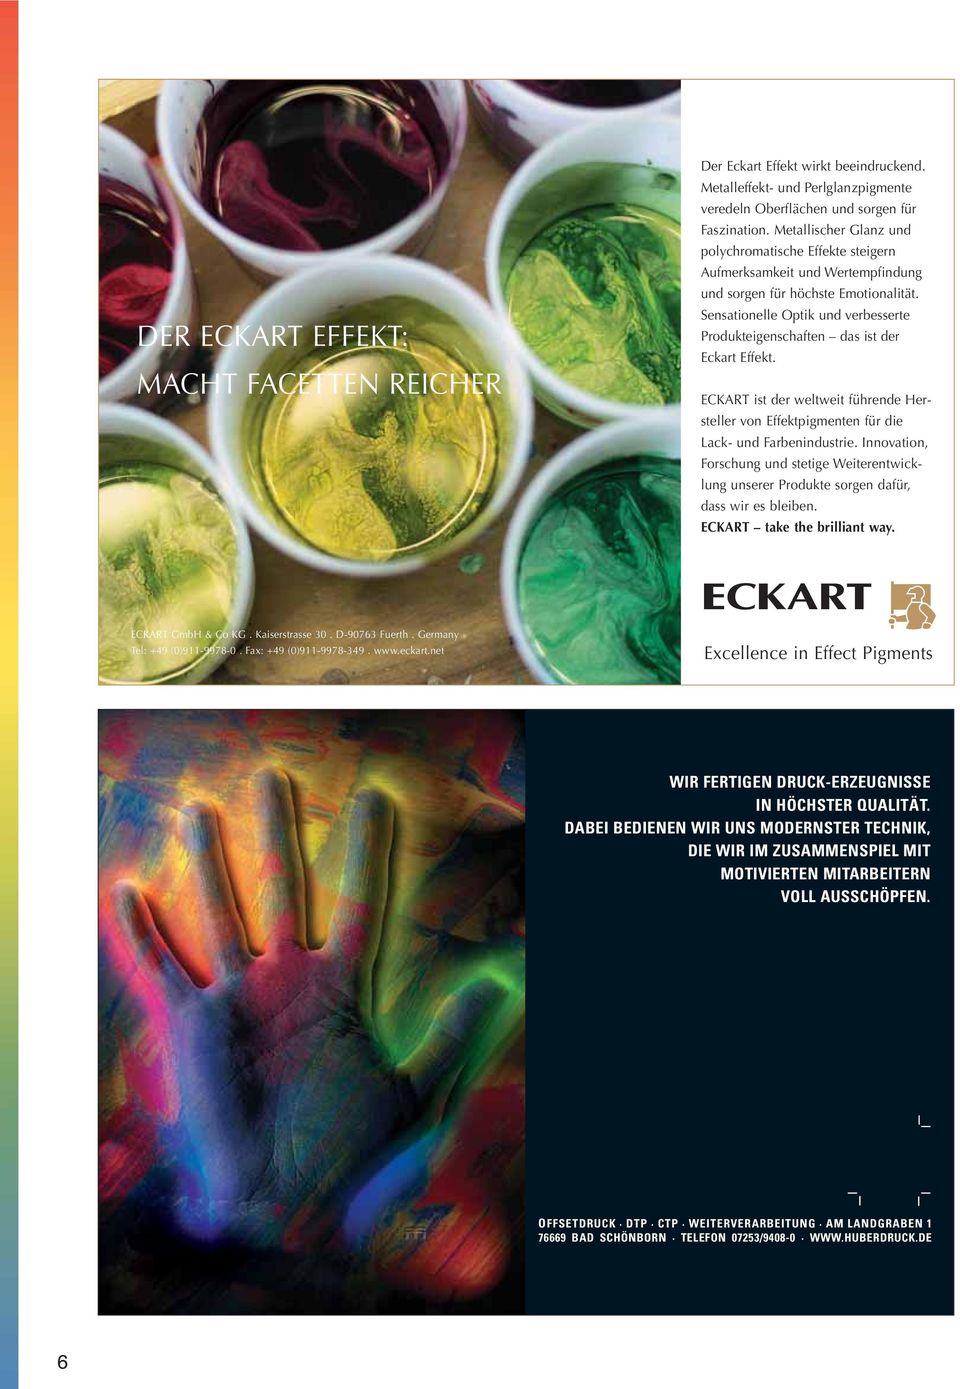 Sensationelle Optik und verbesserte Produkteigenschaften das ist der Eckart Effekt. ECKART ist der weltweit führende Hersteller von Effektpigmenten für die Lack- und Farbenindustrie.